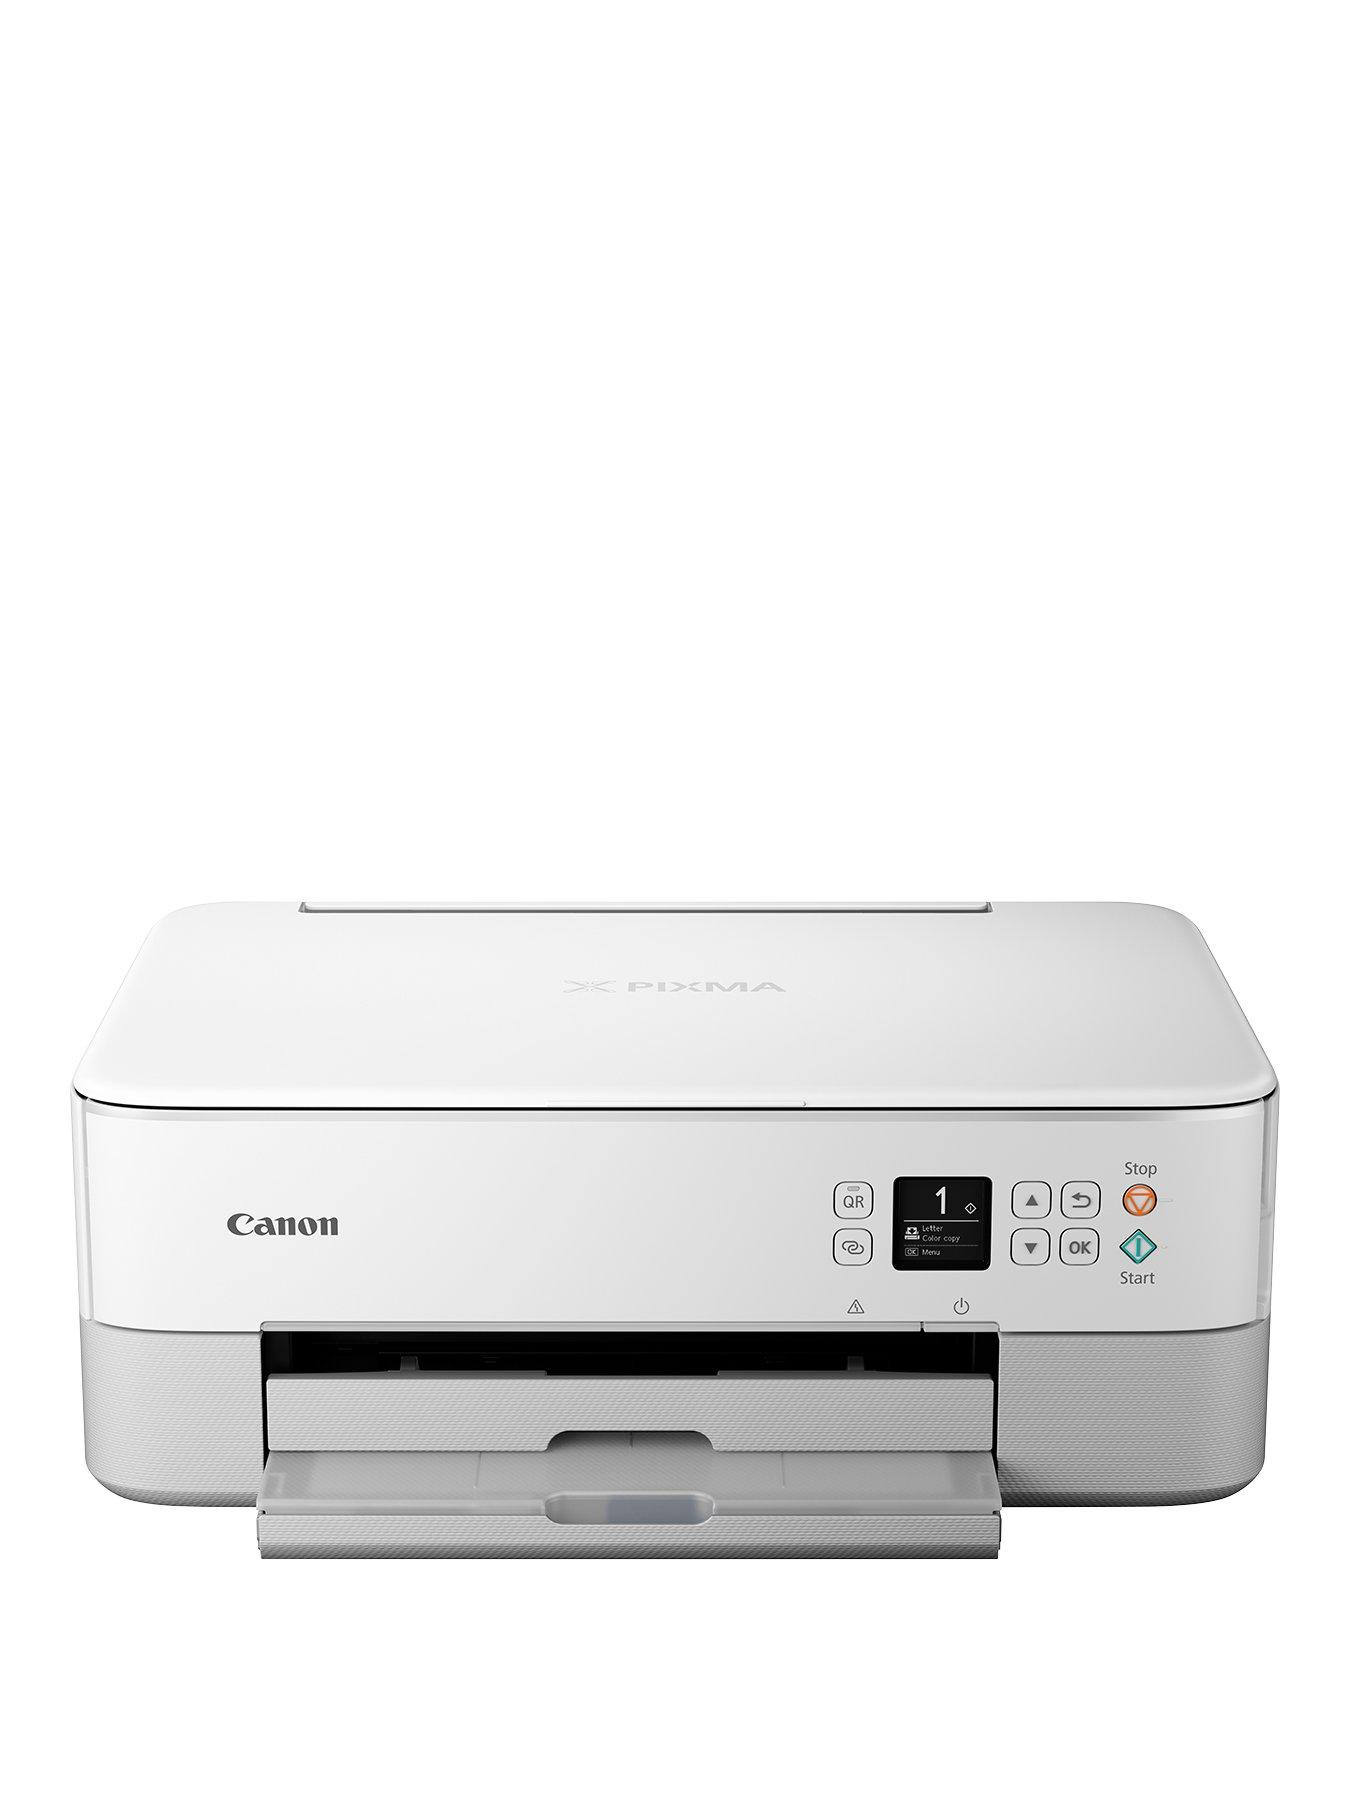 Canon PIXMA TS3450 Multifunction Inkjet Printer - Black & Genuine Printer  Ink - 1 x PG-545 Black